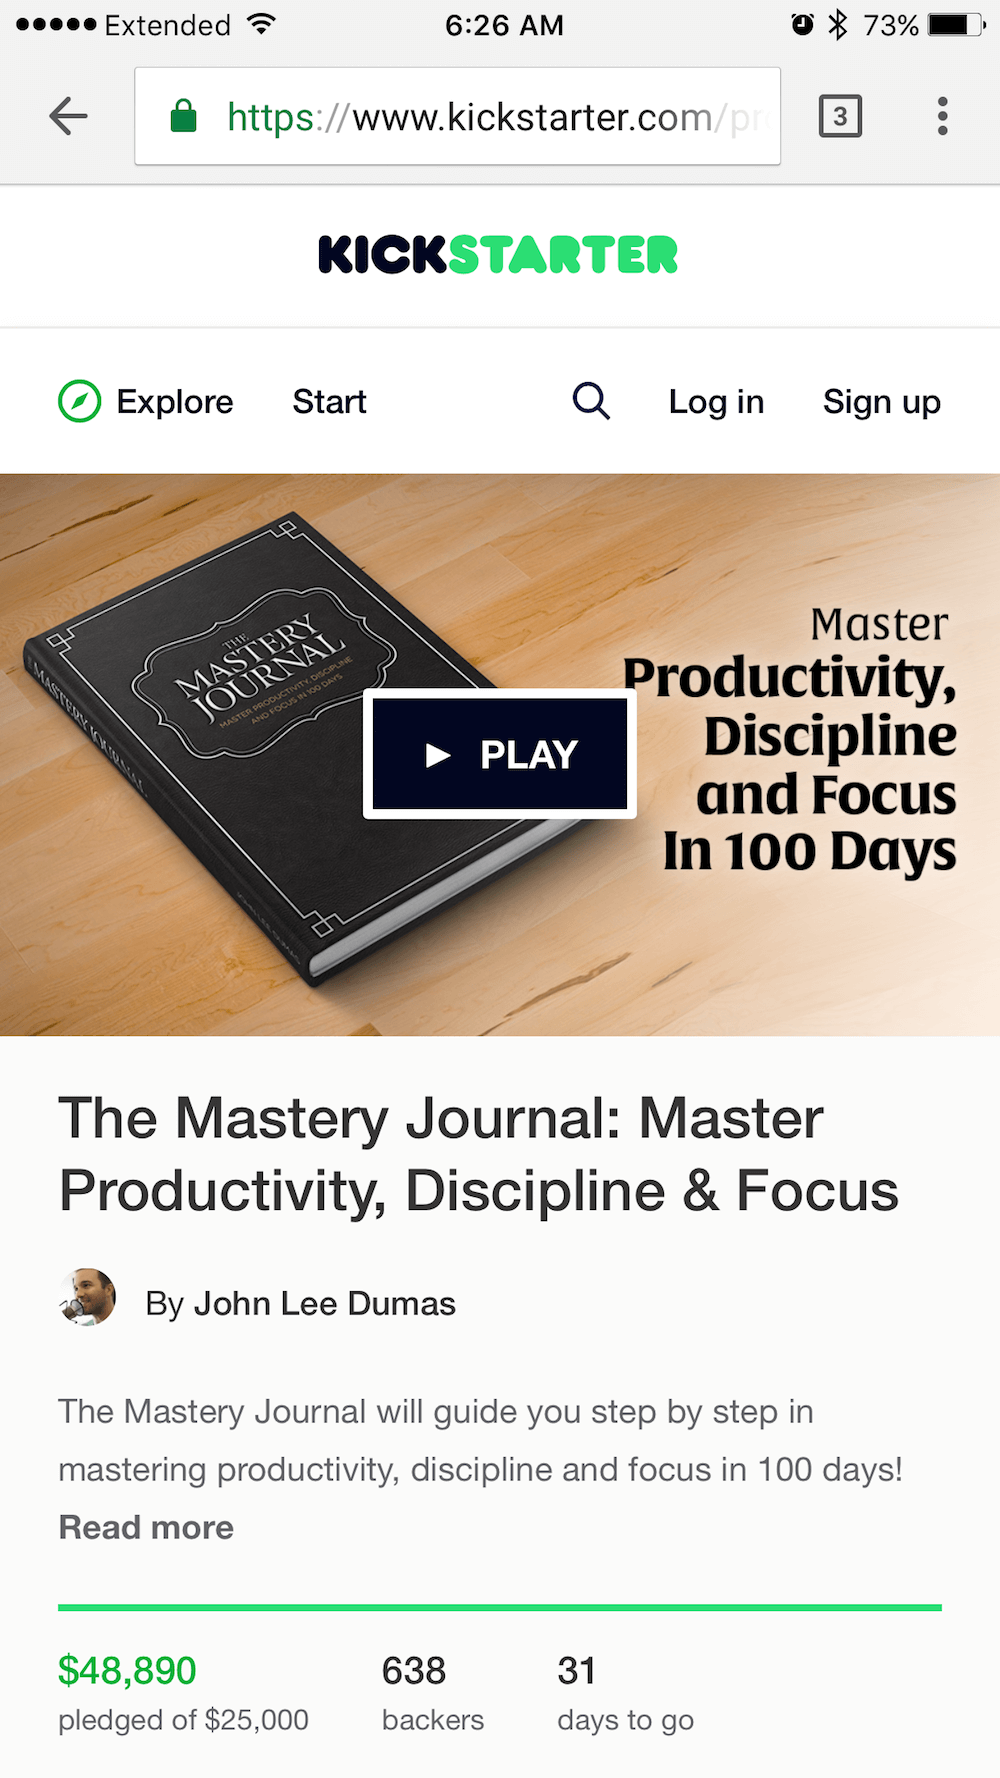 The Mastery Journal on Kickstarter